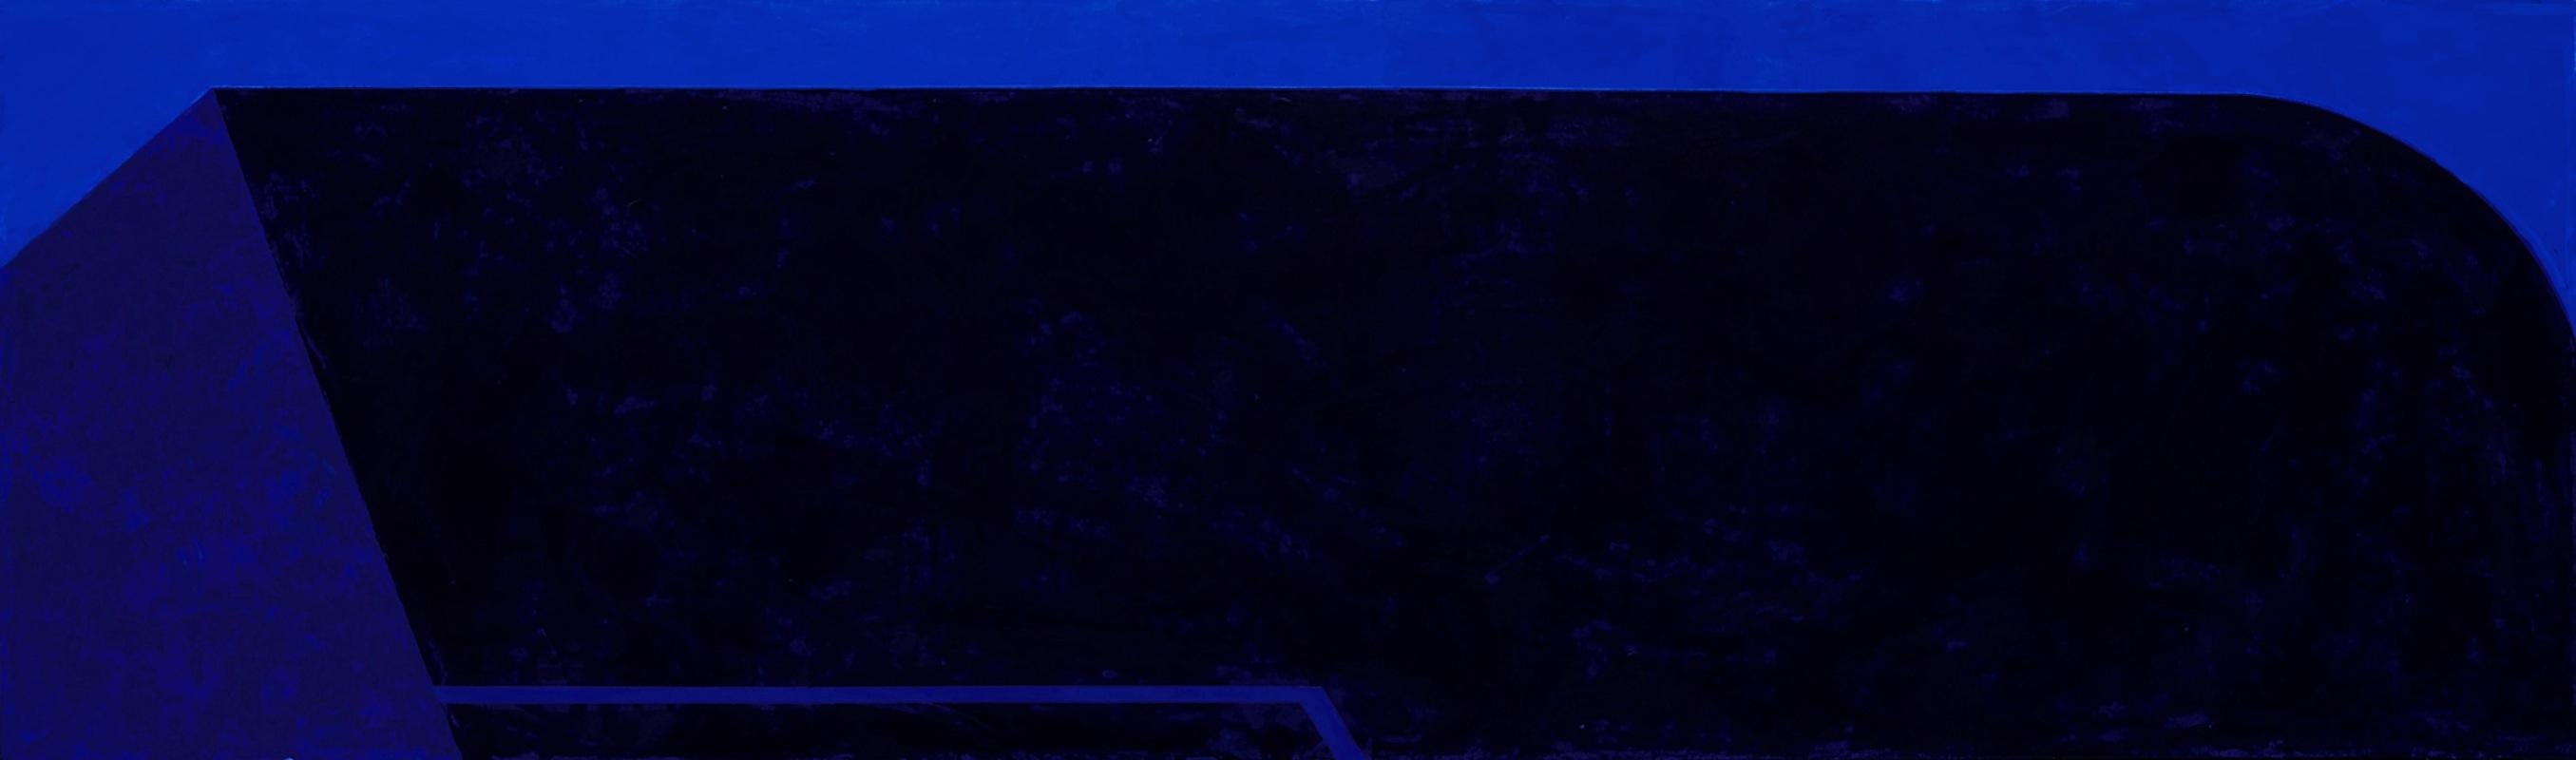 Macyn Bolt, Dark Pool II, acrylic on canvas, Minimalist, 18 x 60, 2018 For Sale 2